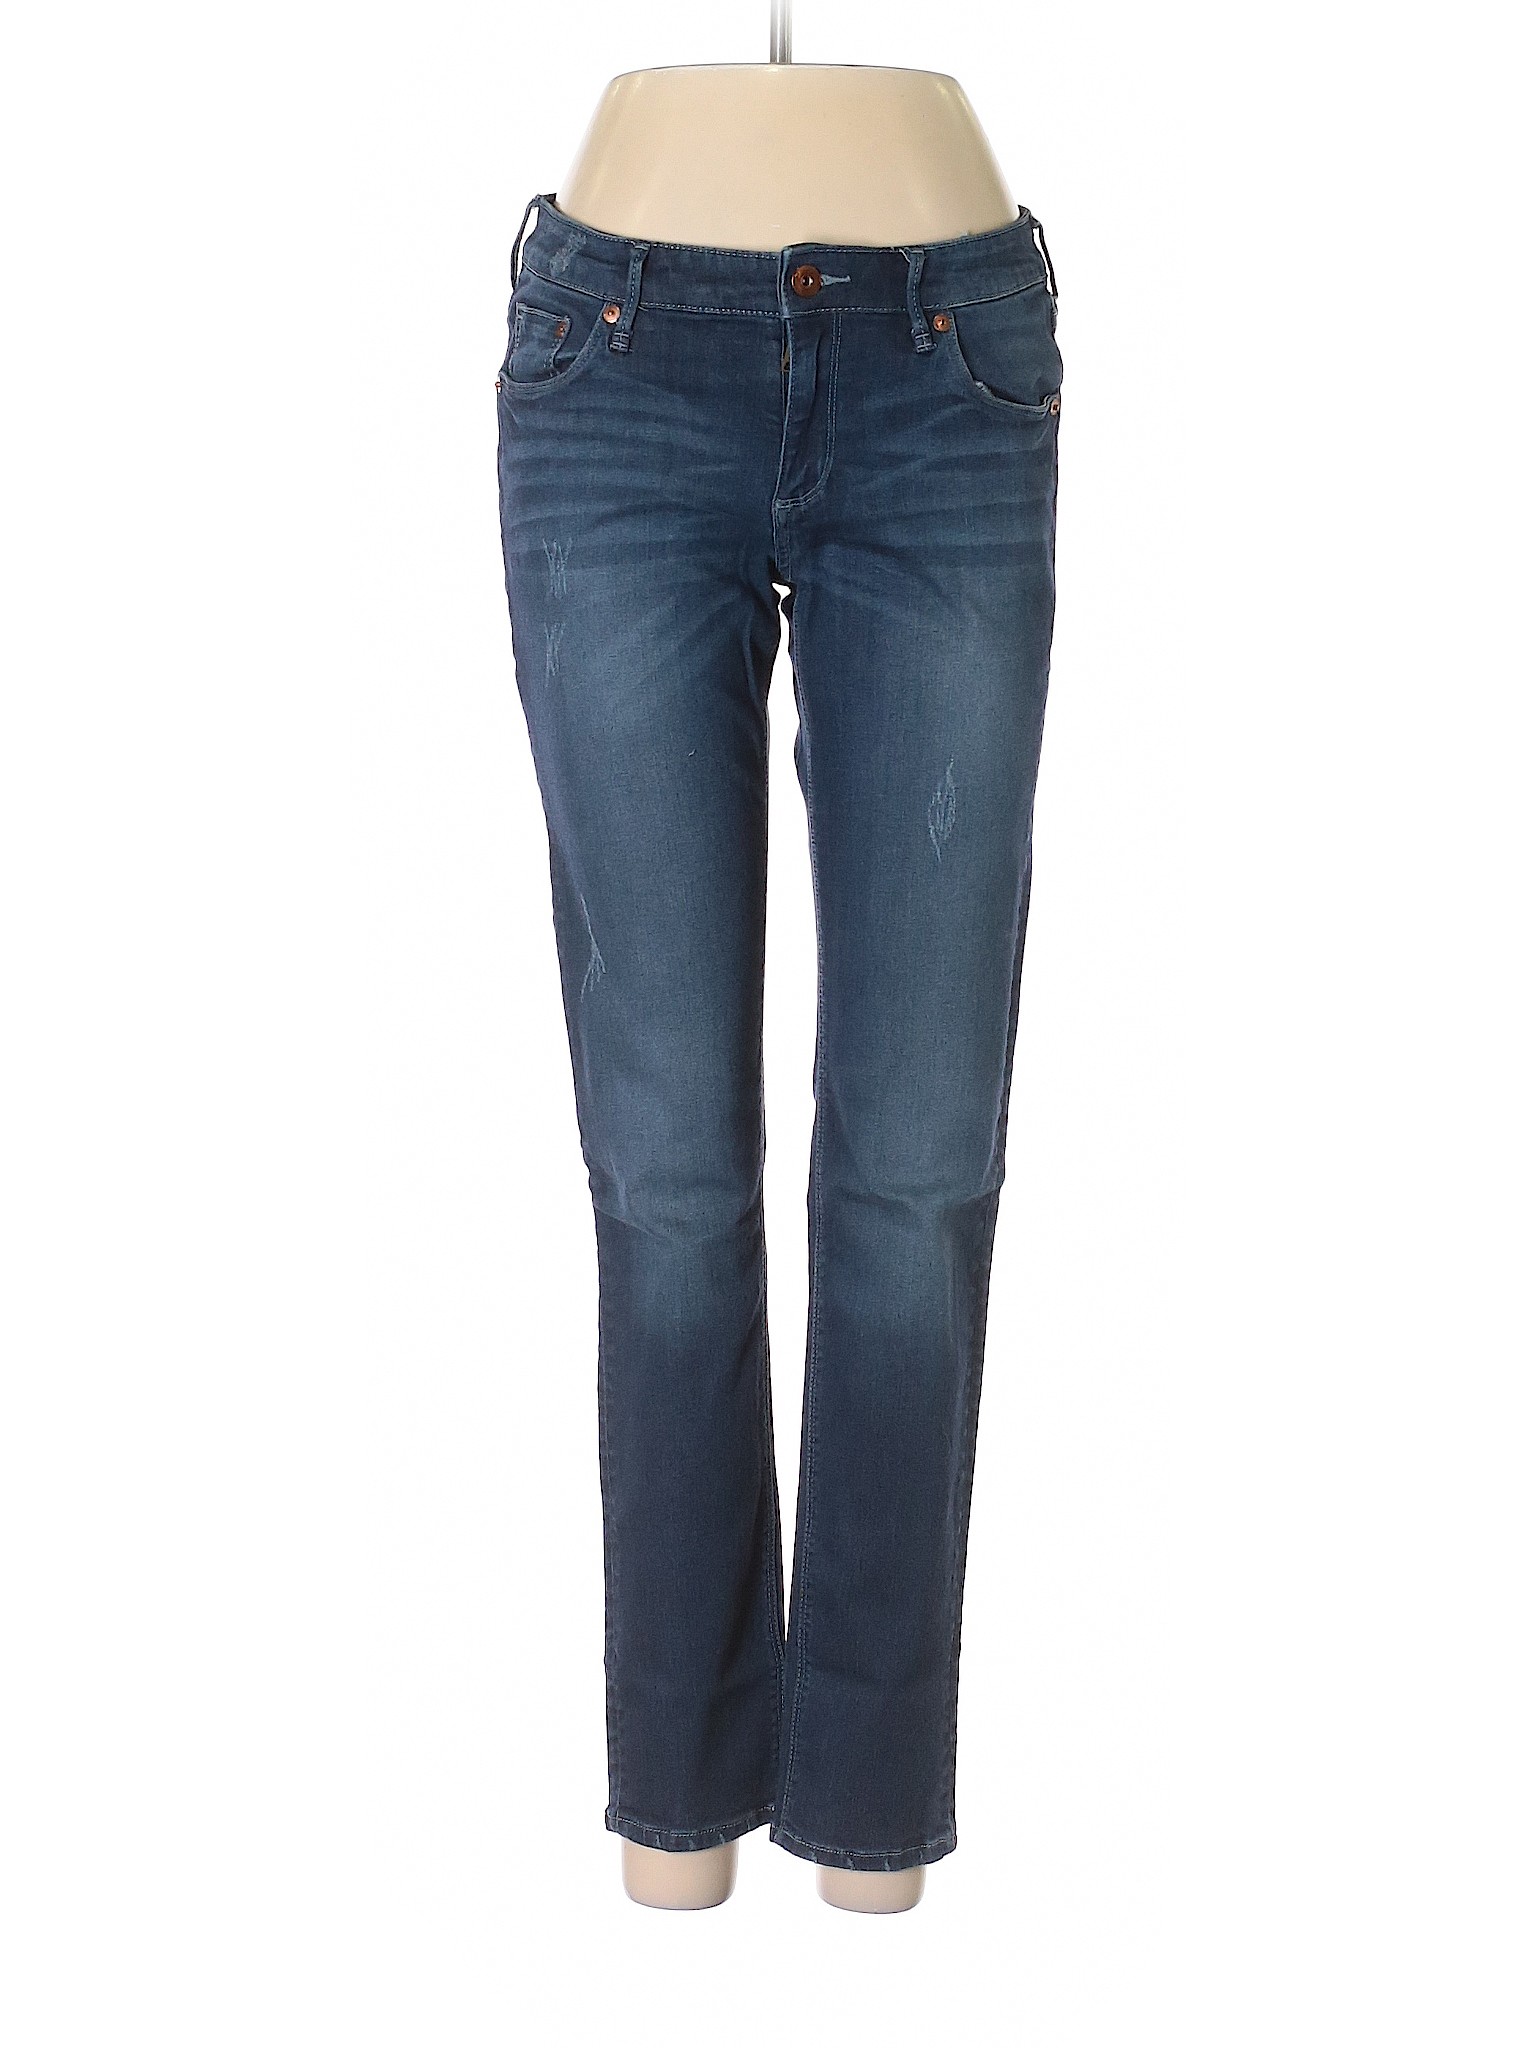 &Denim by H&M Women Blue Jeans 28W | eBay